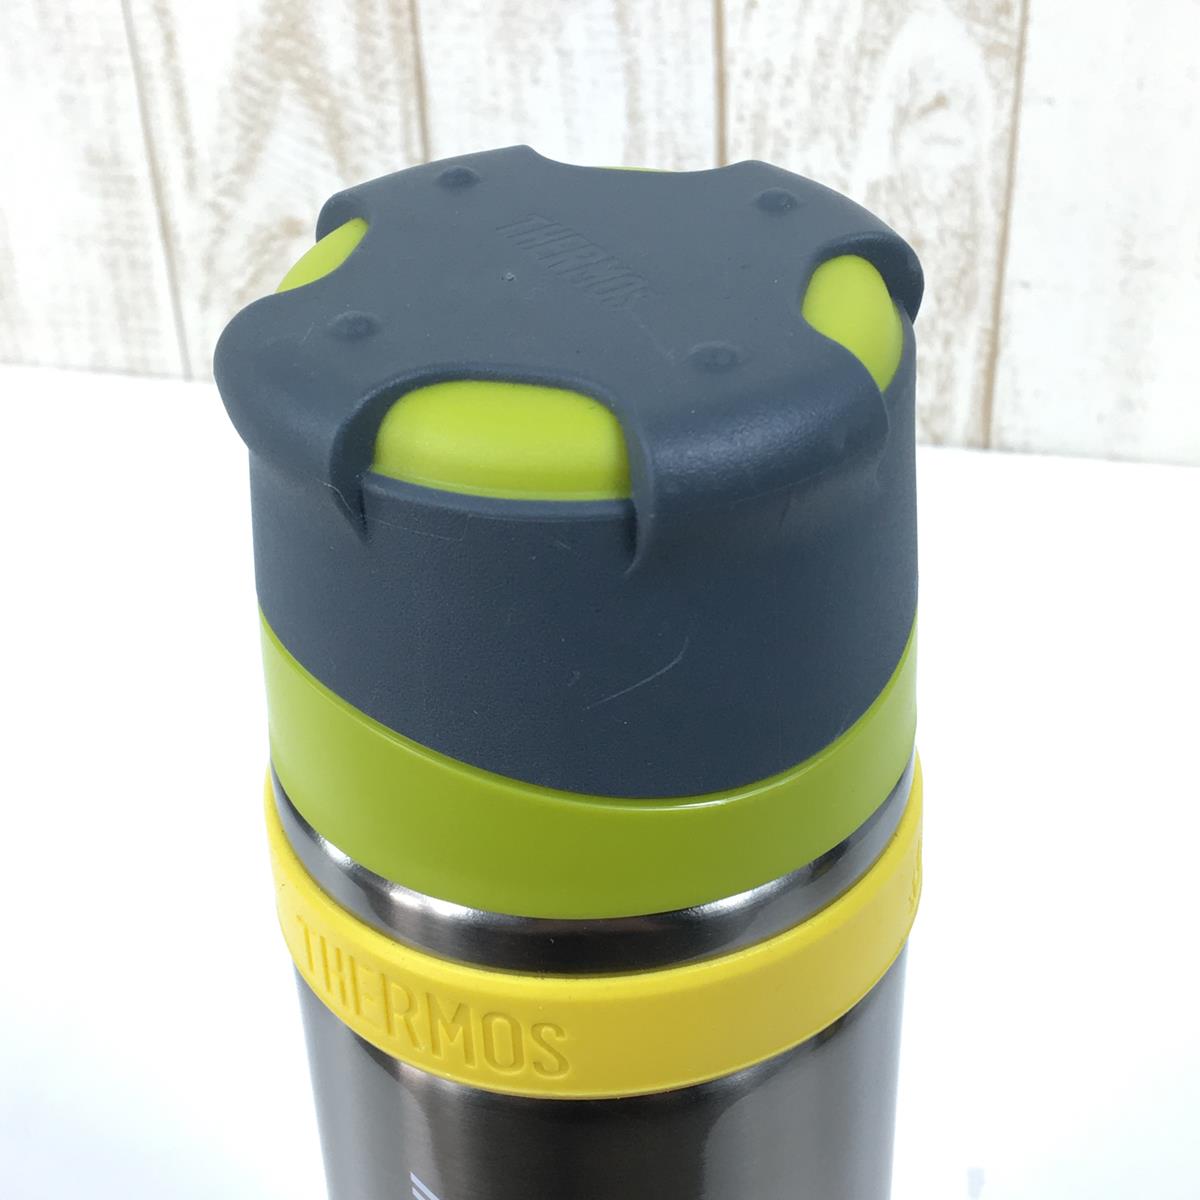 サーモス 山専ステンレスボトル 0.9L 保温ボトル 水筒 FFX-900 + 専用ボトルポーチ セット THERMOS FFX-900 LMG イエロー系